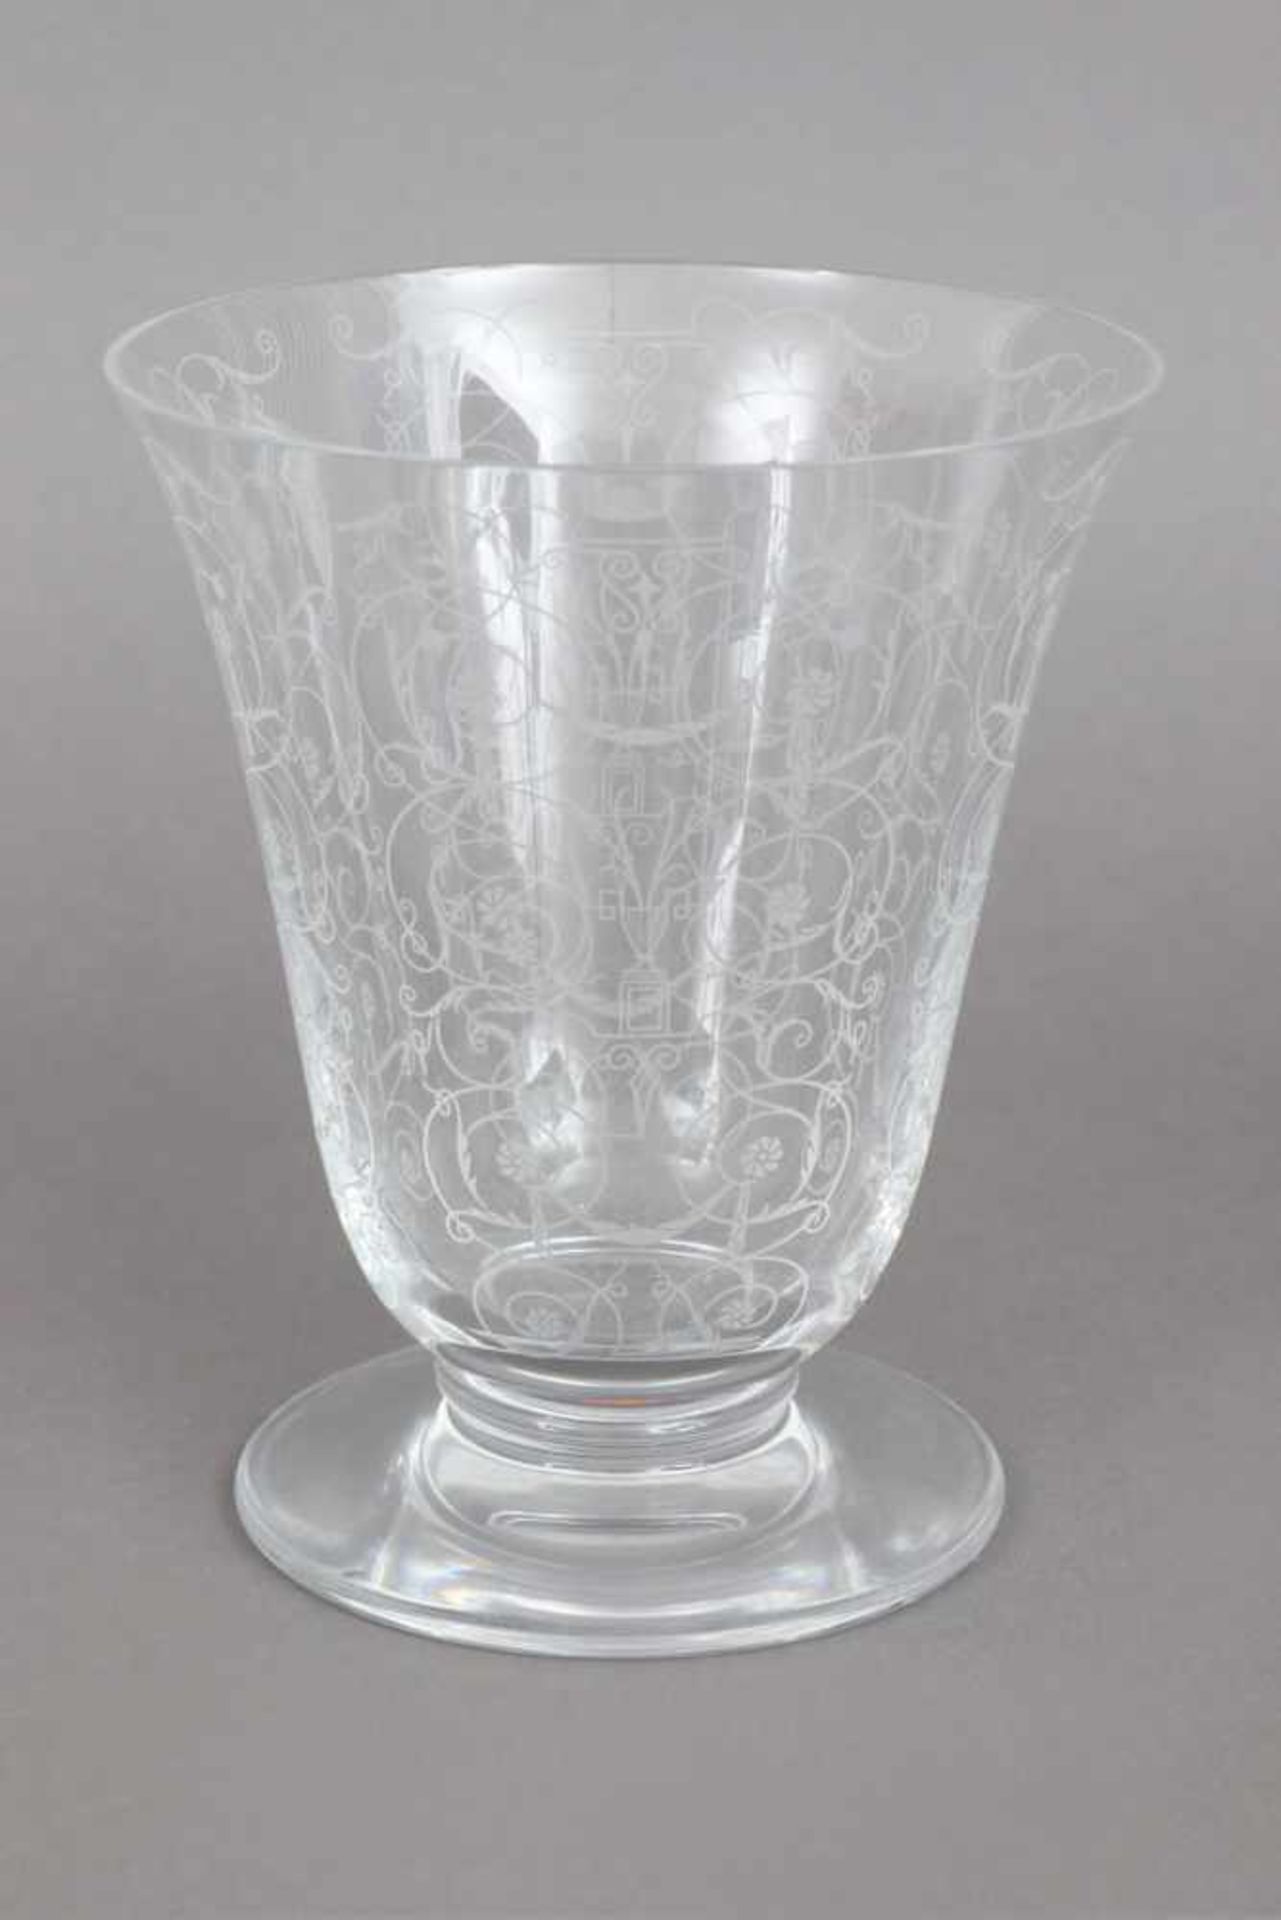 BACCARAT Kristallvase trichterförmiger Korpus, Ätzdekor mit Rosen-Ranken, Rundfuß, H ca. 18cm